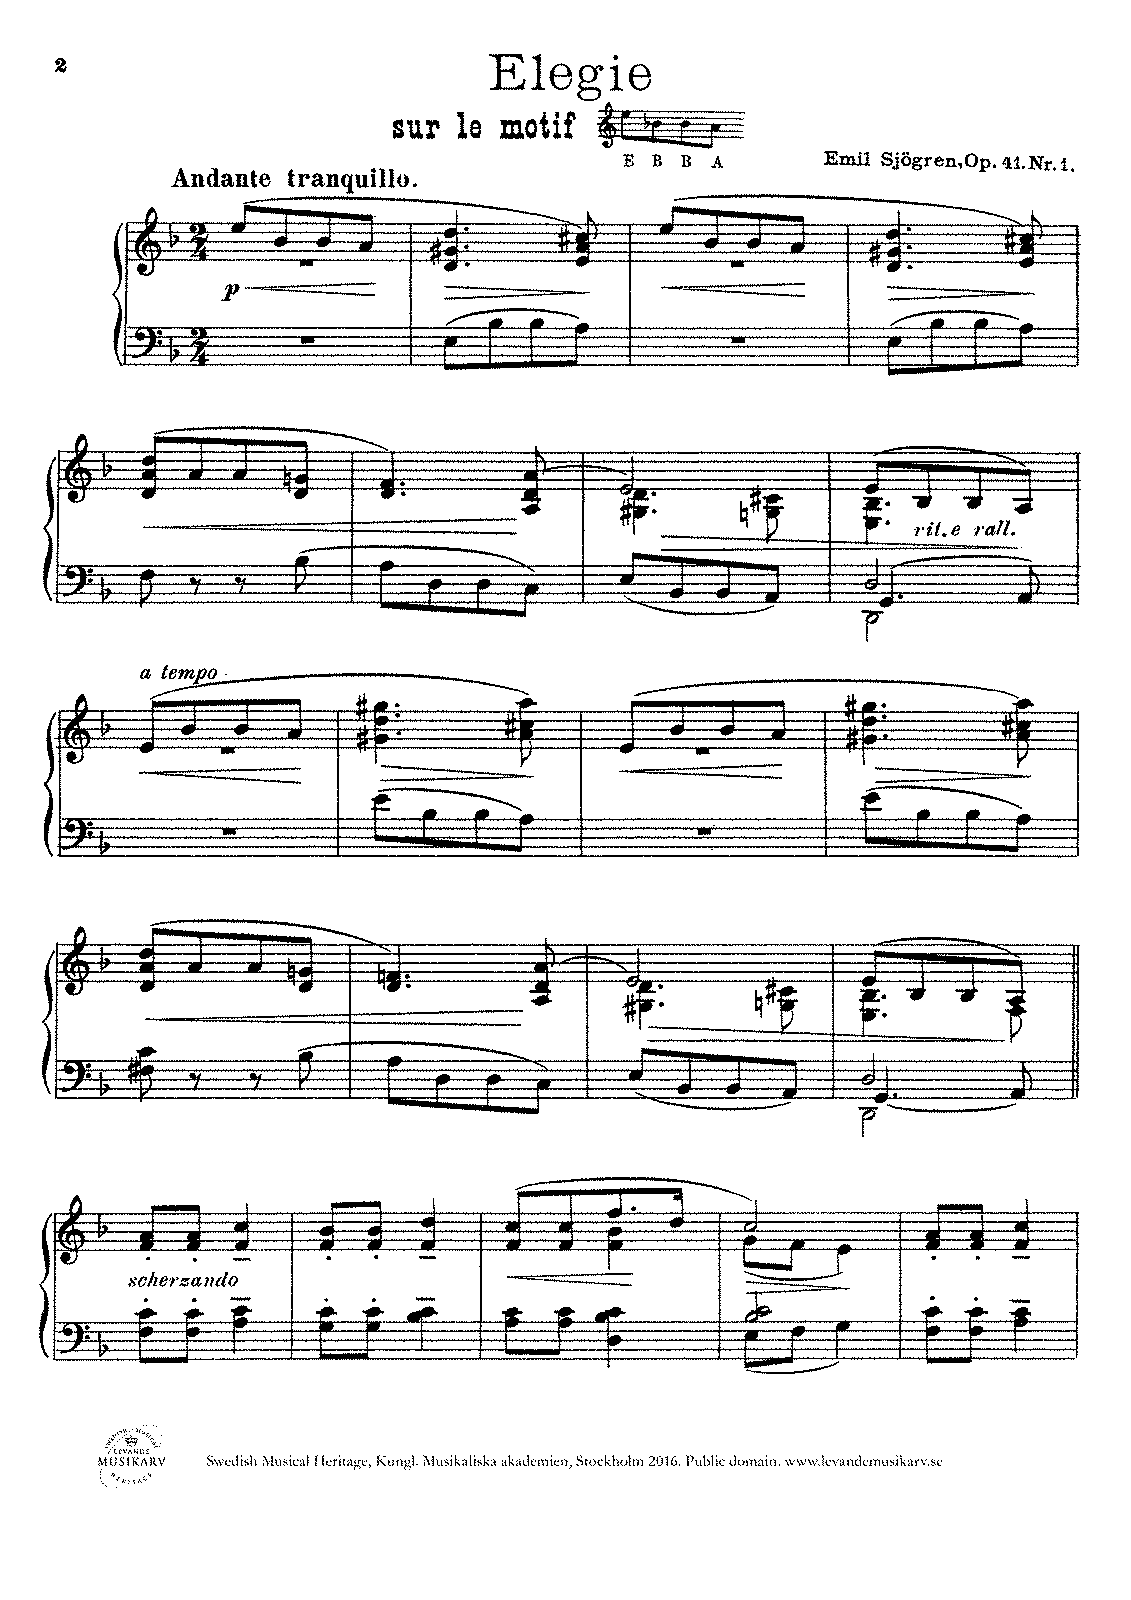 4 Piano Pieces, Op.41 (Sjögren, Emil) - IMSLP